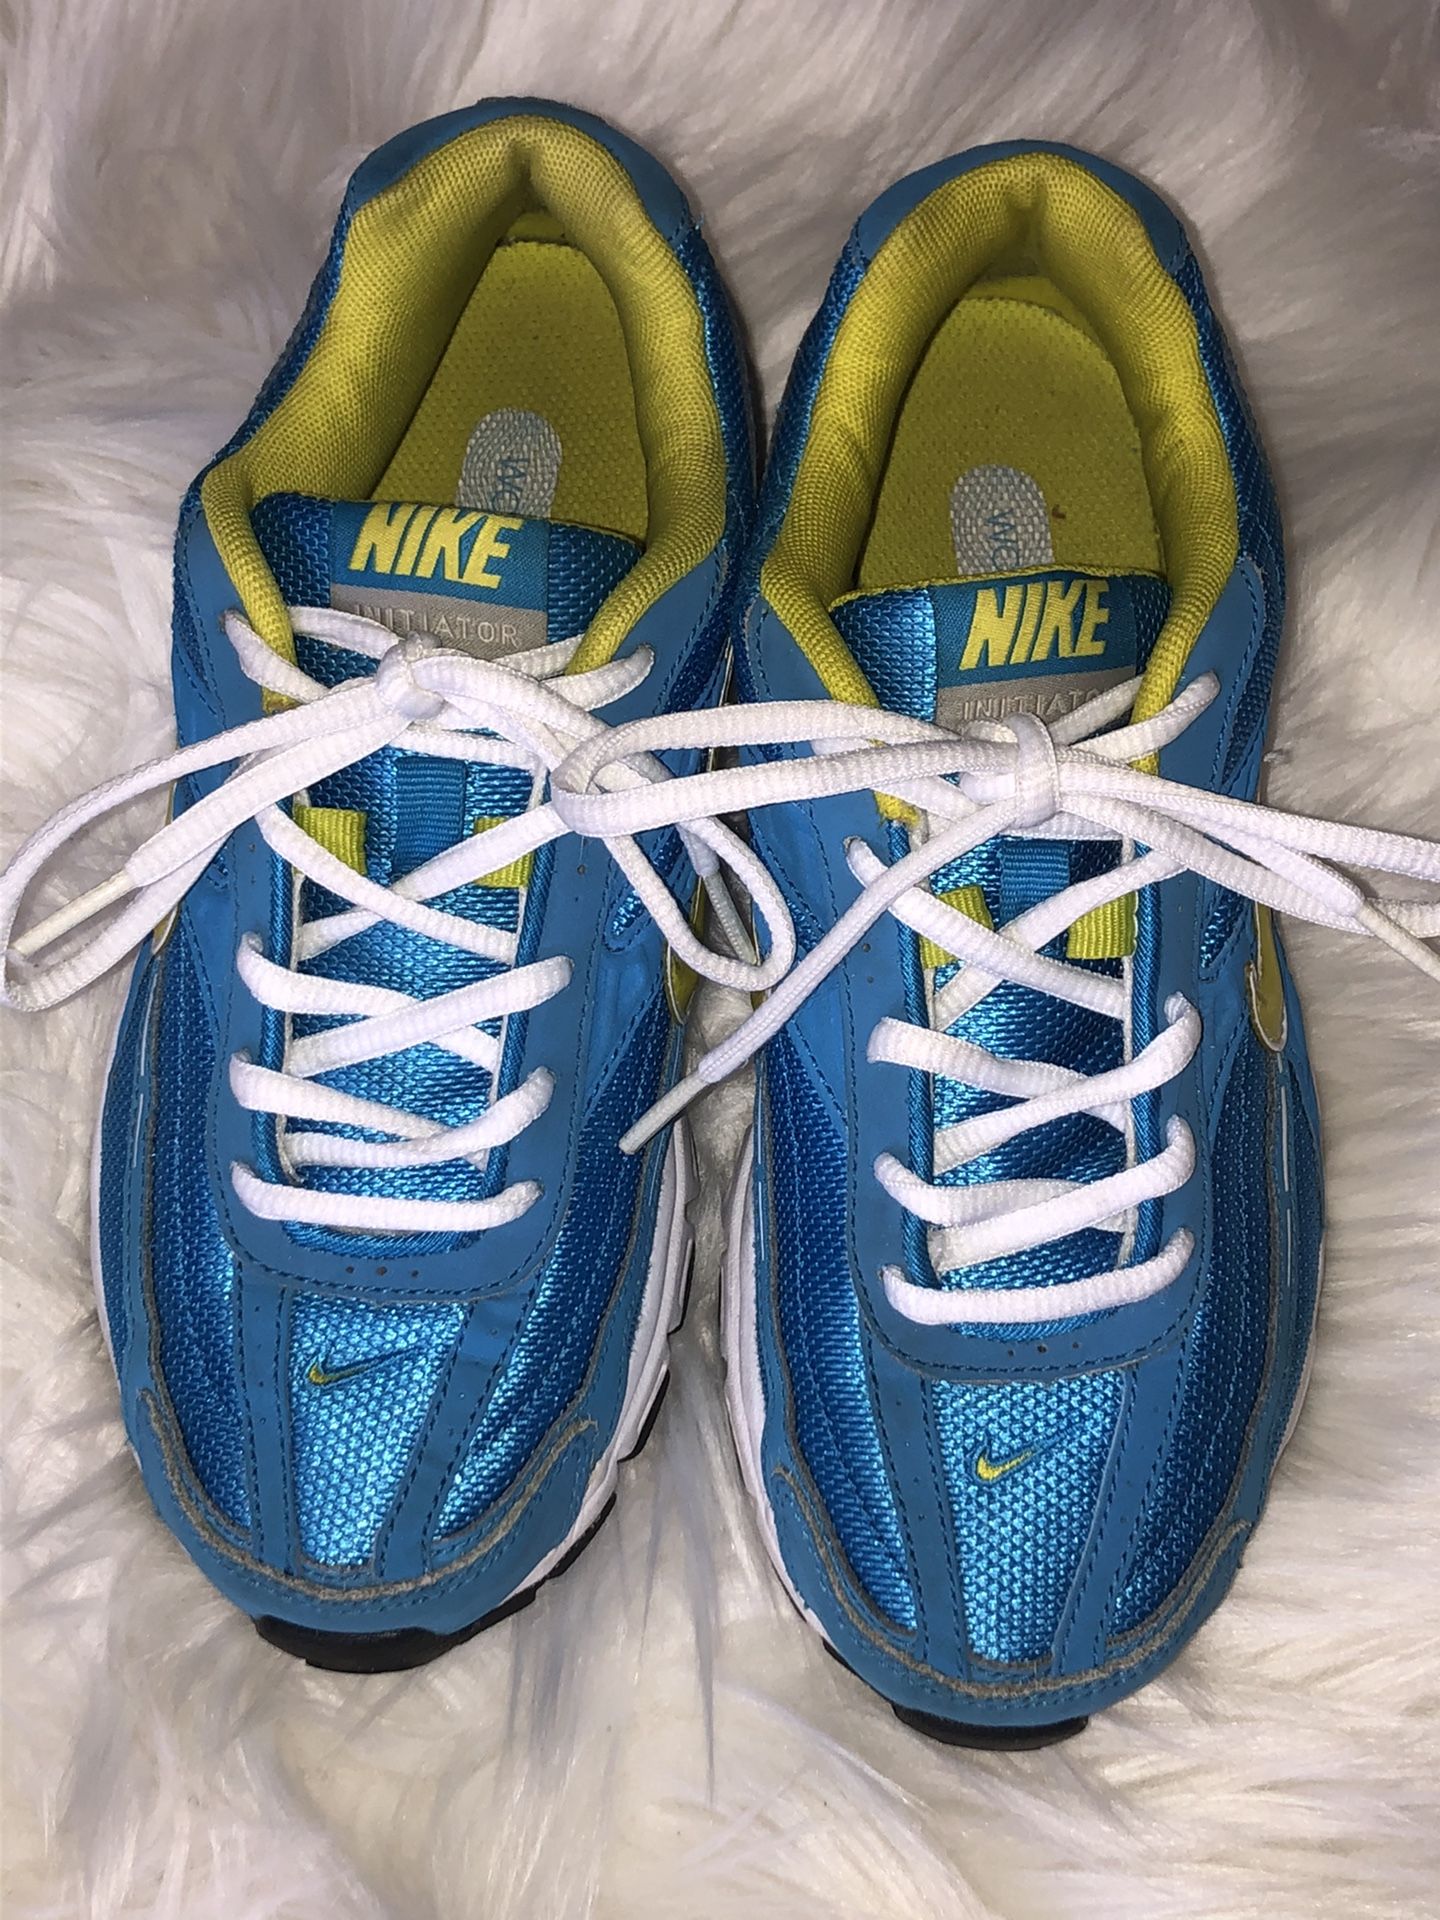 Nike Initiator Running Shoes Size 6.5 Women's Blue/Yellow/White